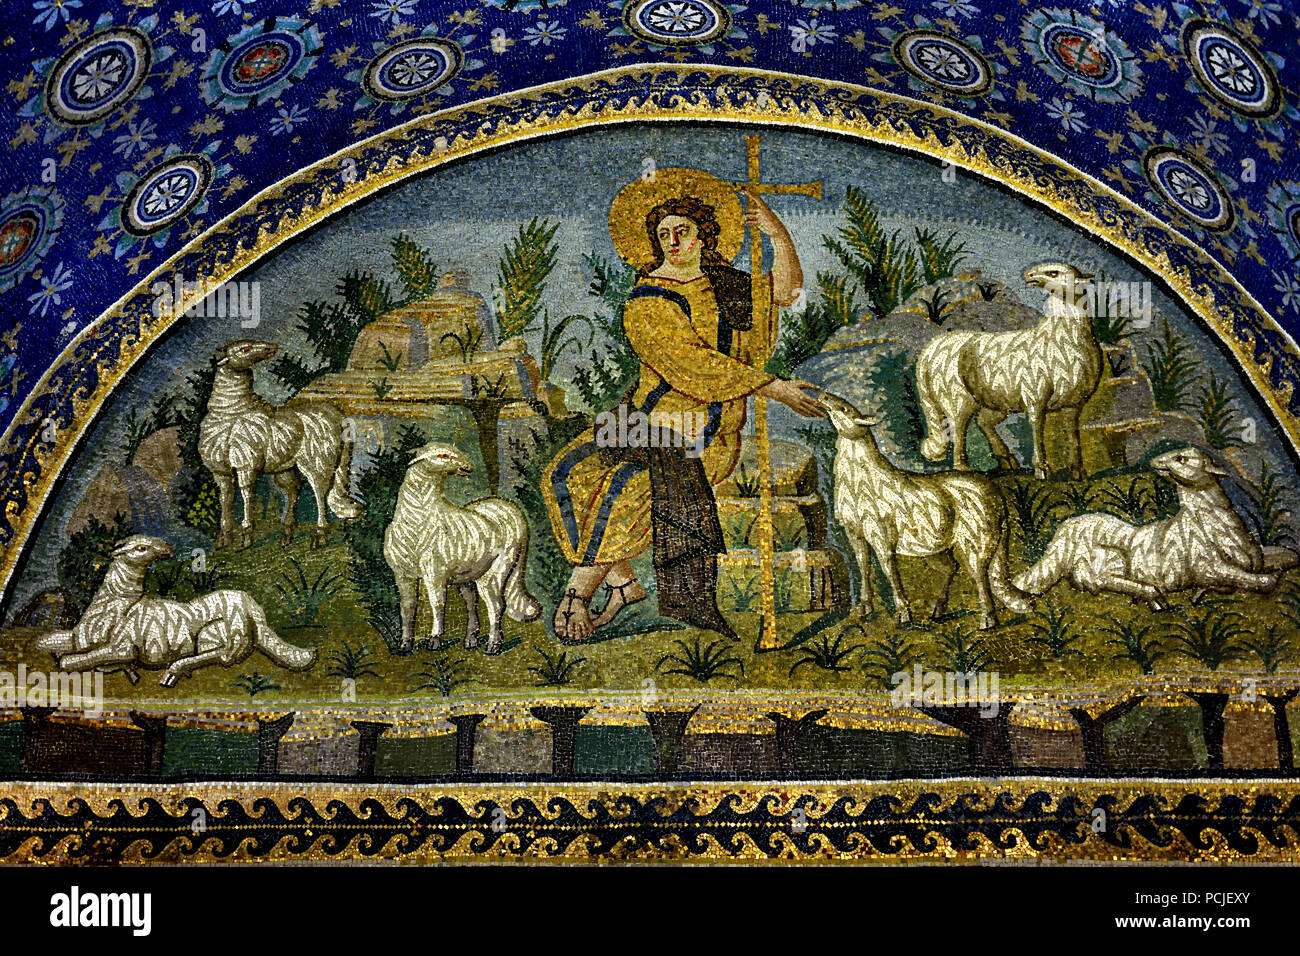 Mausoleum der Galla Placidia in Ravenna (386 - 450 AD) Mosaiken (späte römische und byzantinische Architektur,) Emilia-Romagna - Nördliche Italien. (UNESCO Weltkulturerbe) Stockfoto